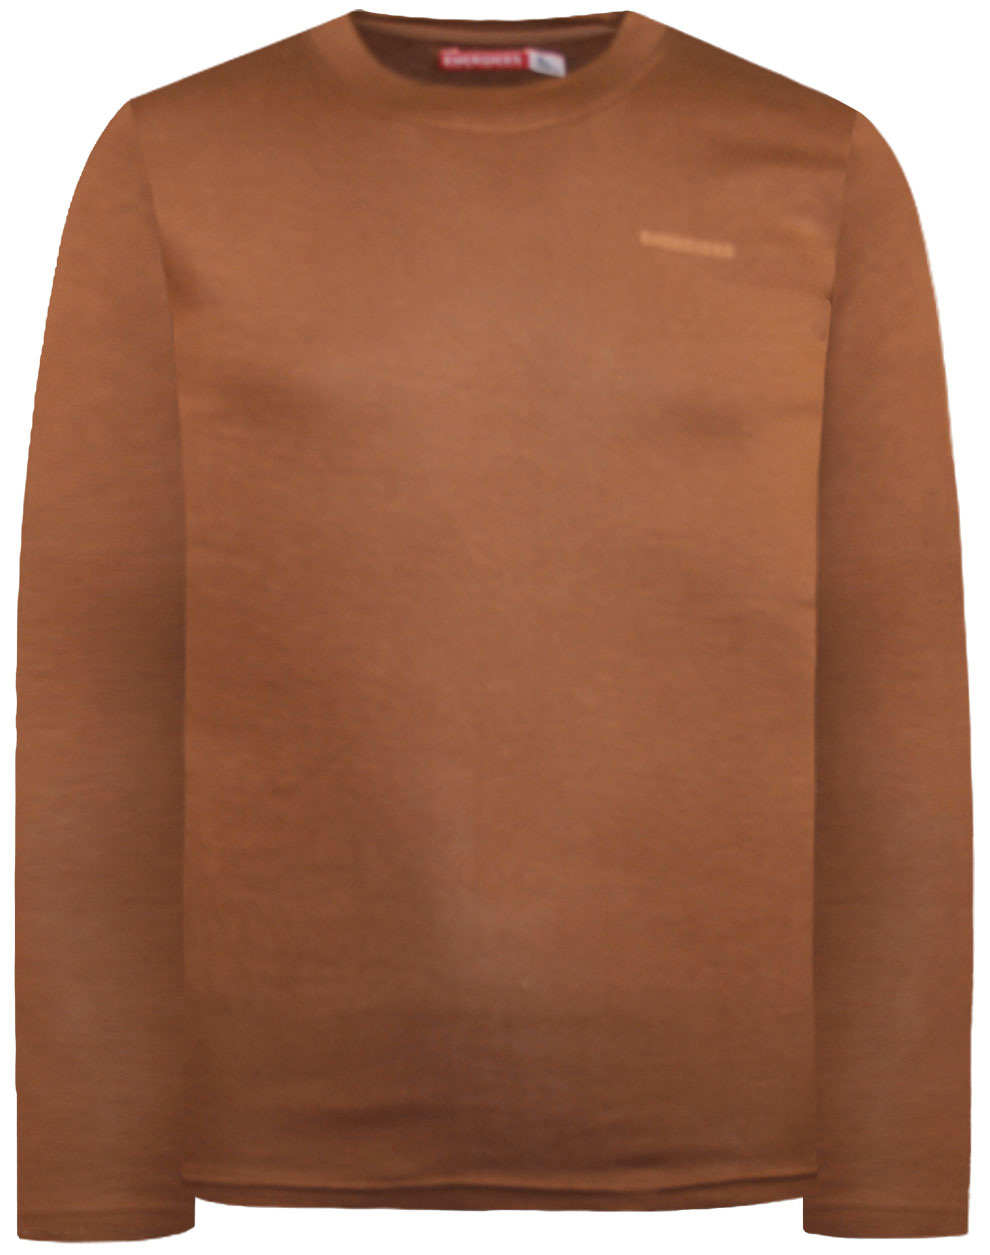 Βαμβακερή μπλούζα με λαιμόκοψη Energiers Basic Line για αγόρι | ΚΑΦΕ ΑΓΟΡΙ 1-6>Μπλούζα